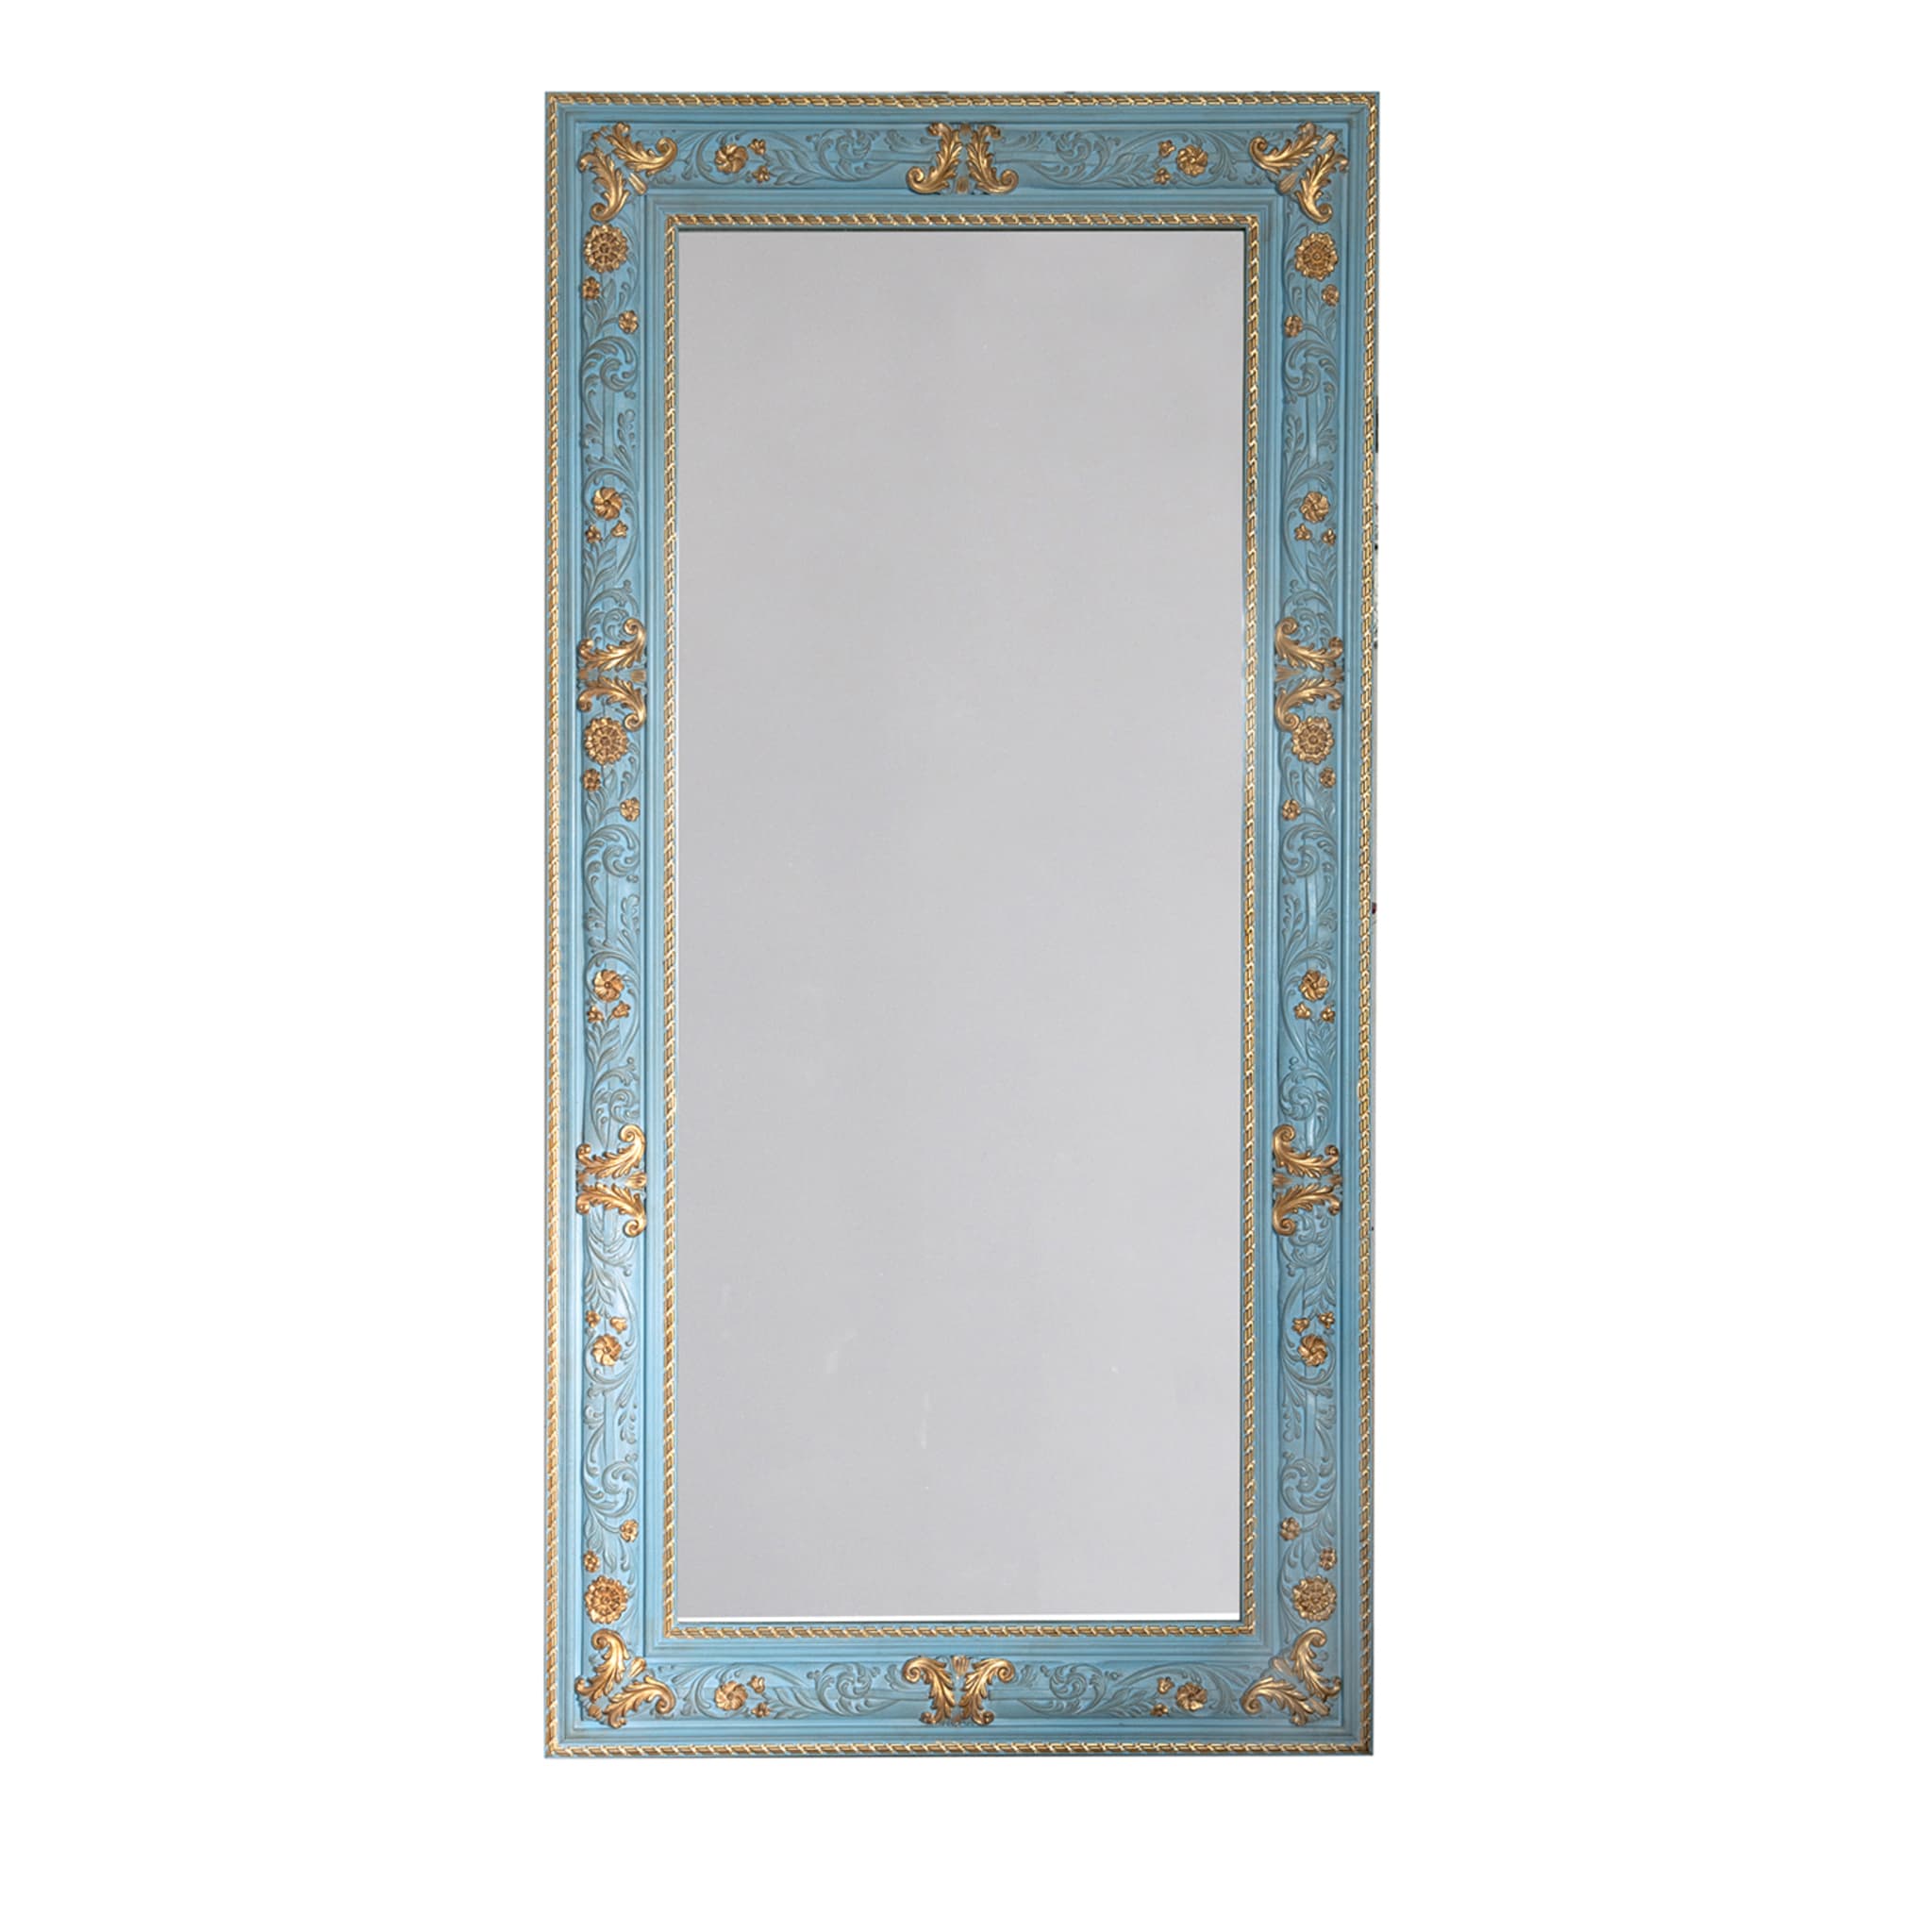 Azzurra Wall Mirror - Main view